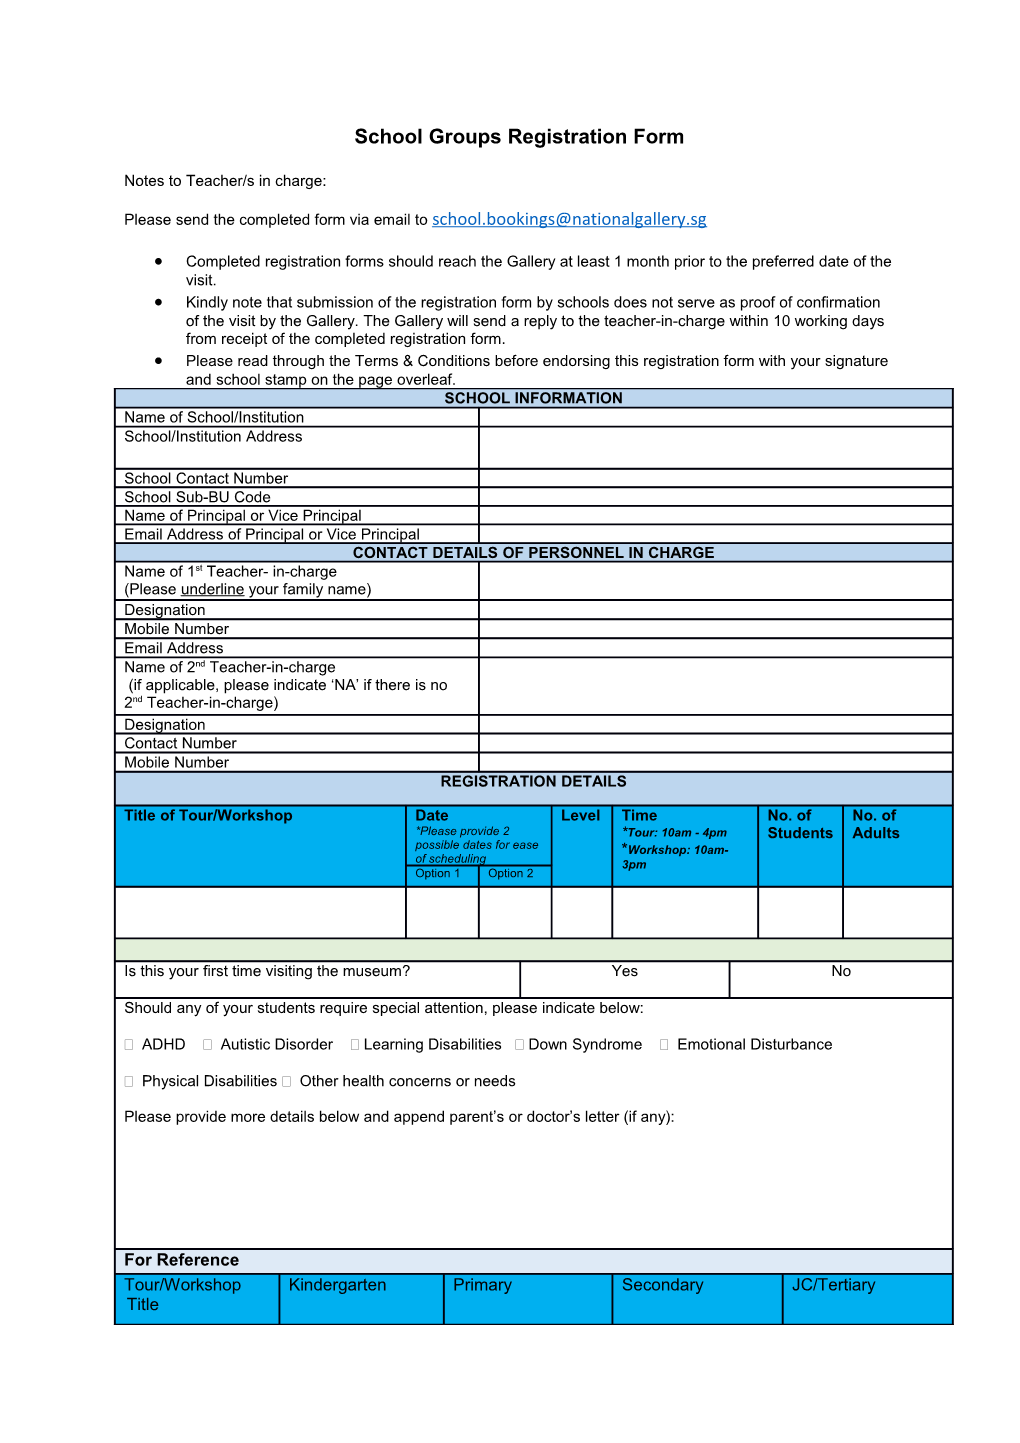 School Groupsregistration Form